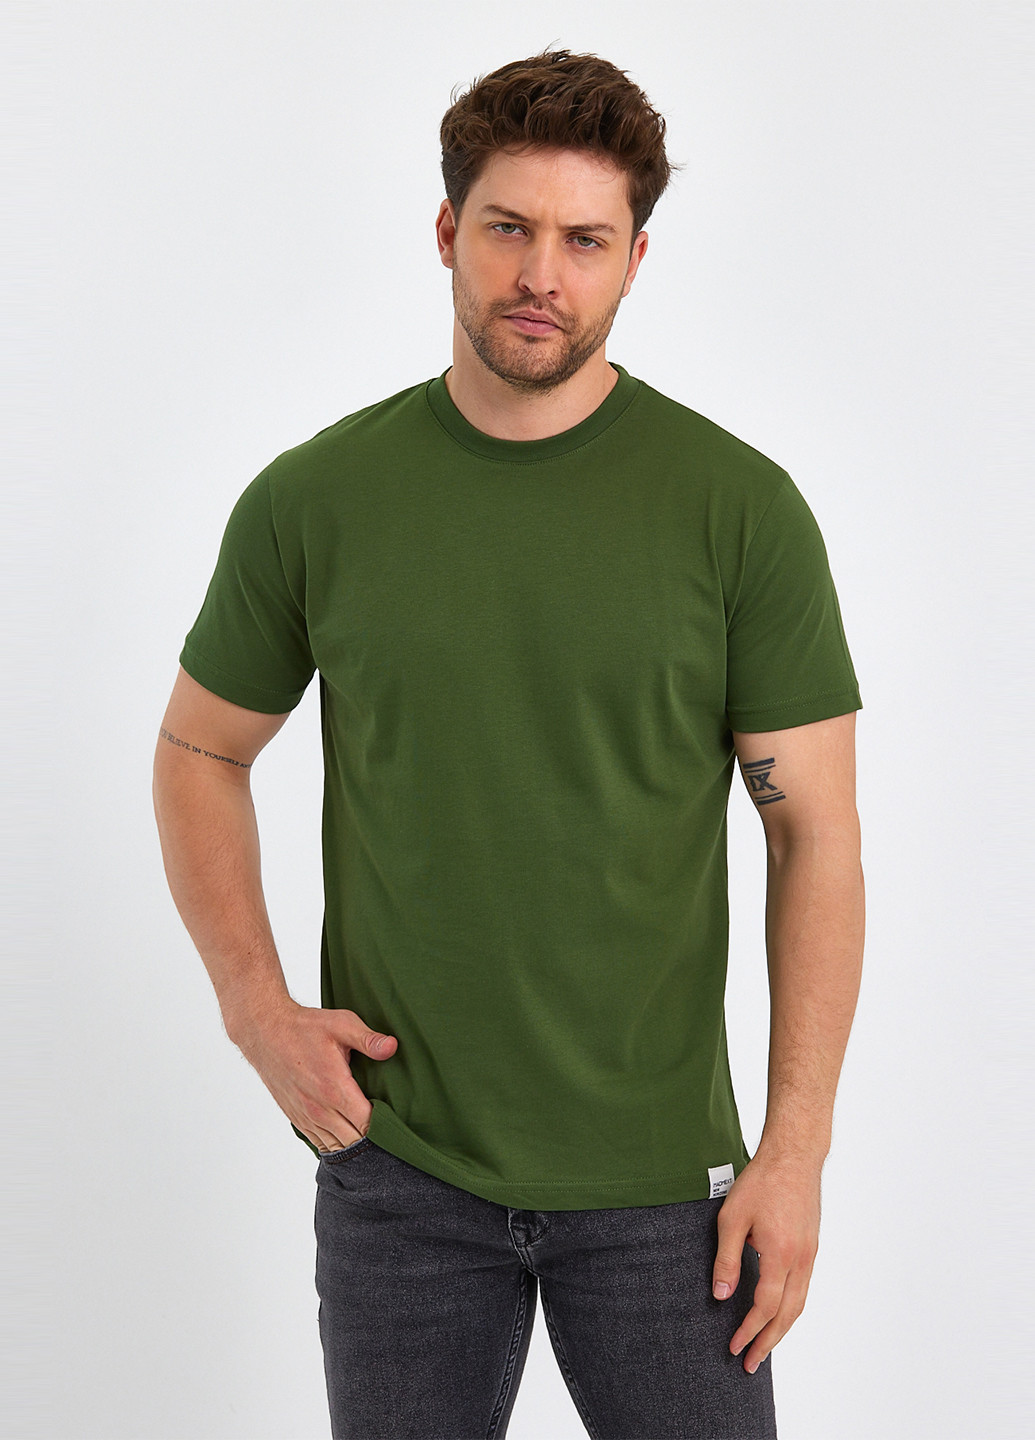 Оливкова футболка Trend Collection